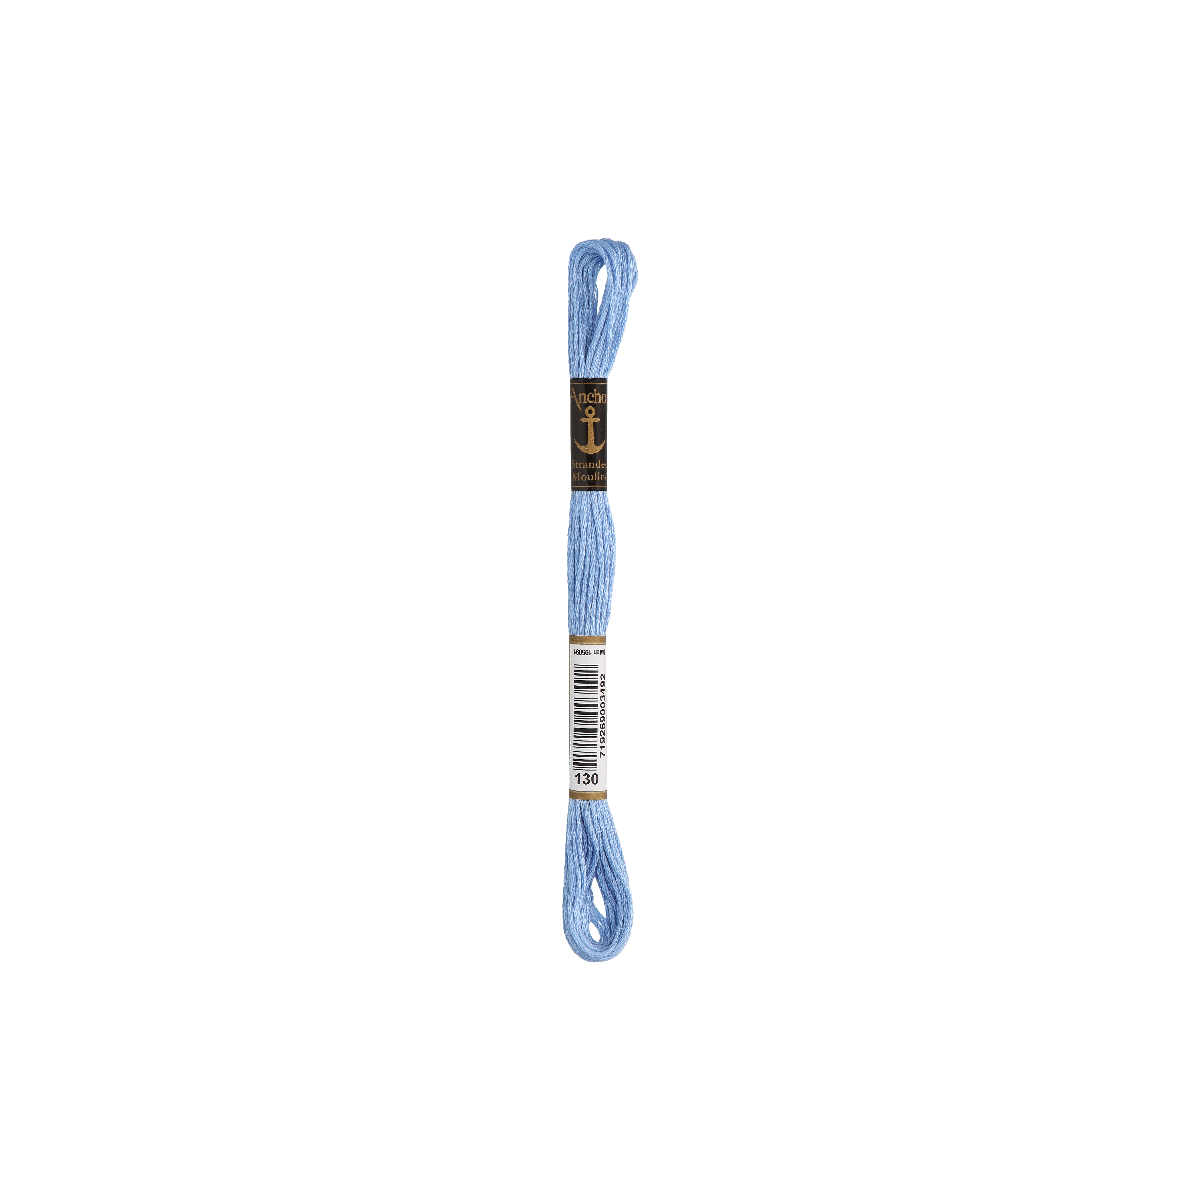 Anchor Sticktwist 8m, himmelblau, Baumwolle, Farbe 130,...